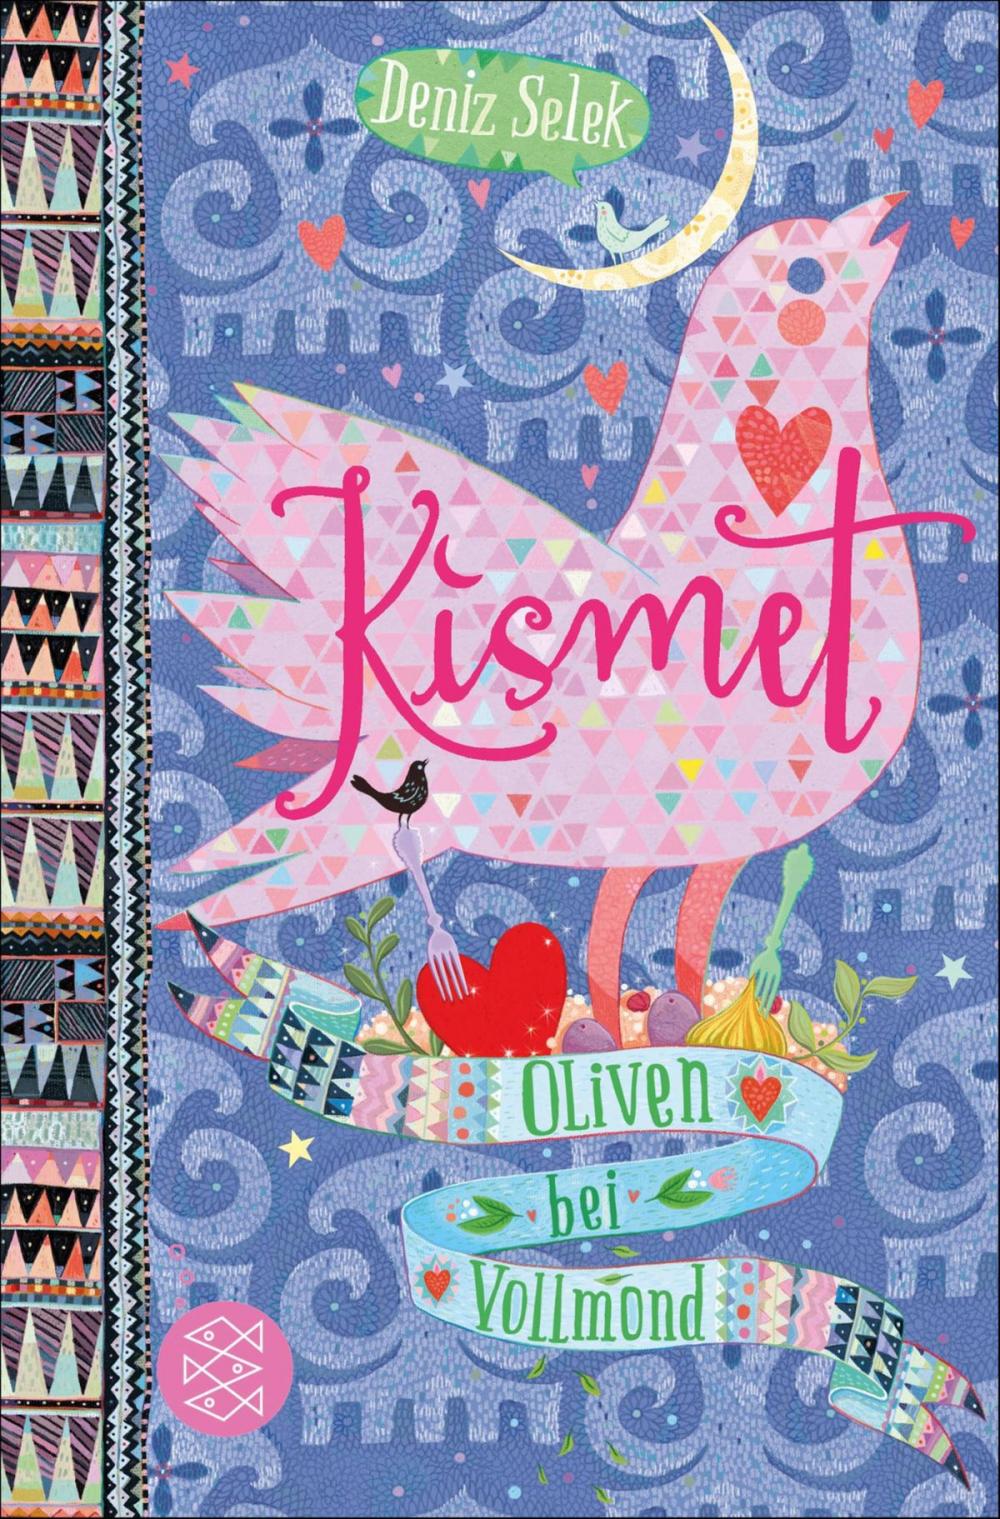 Big bigCover of Kismet – Oliven bei Vollmond